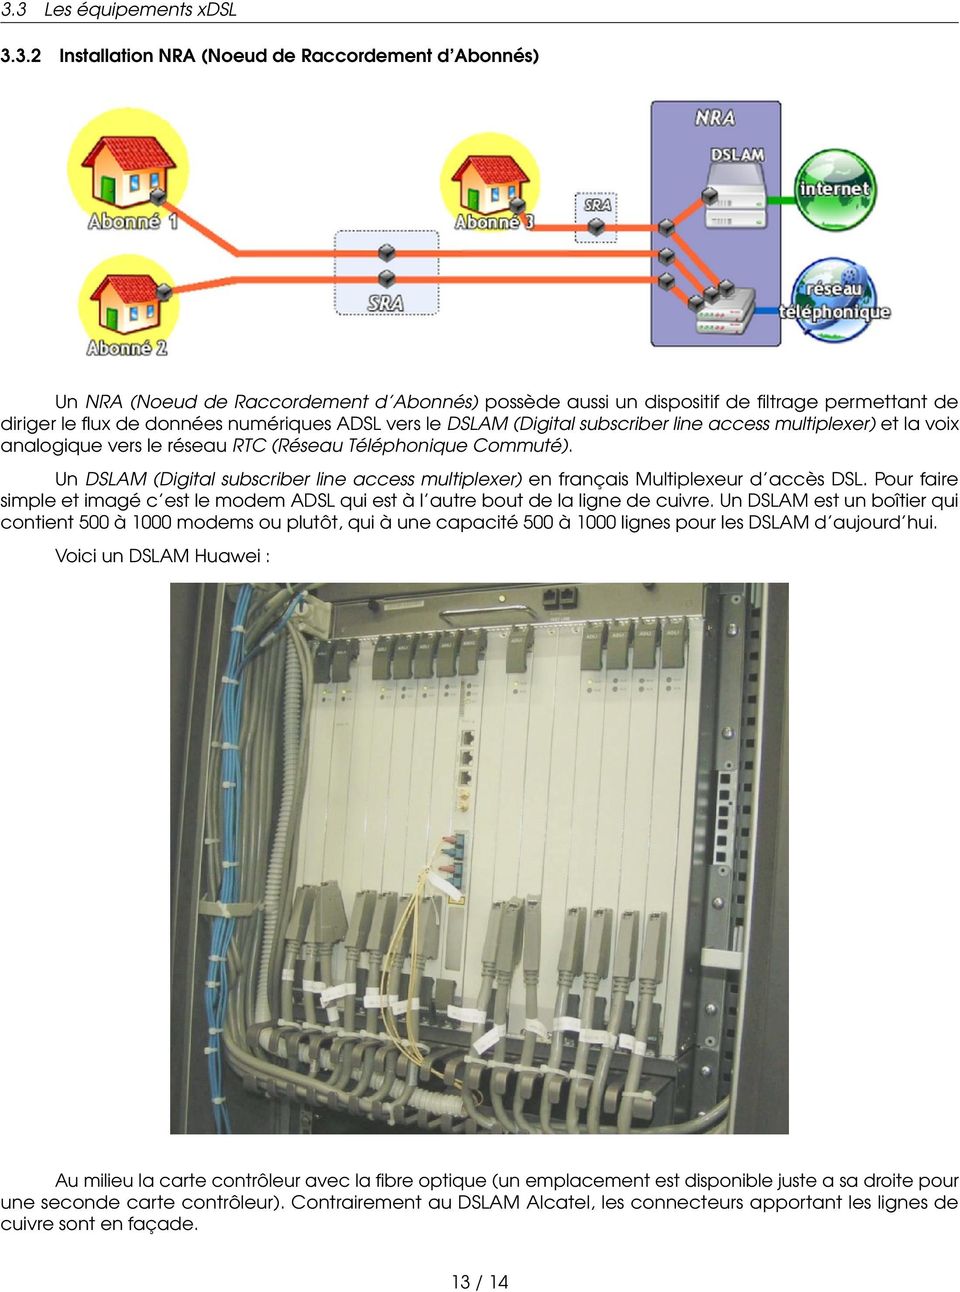 Un DSLAM (Digital subscriber line access multiplexer) en français Multiplexeur d accès DSL. Pour faire simple et imagé c est le modem ADSL qui est à l autre bout de la ligne de cuivre.